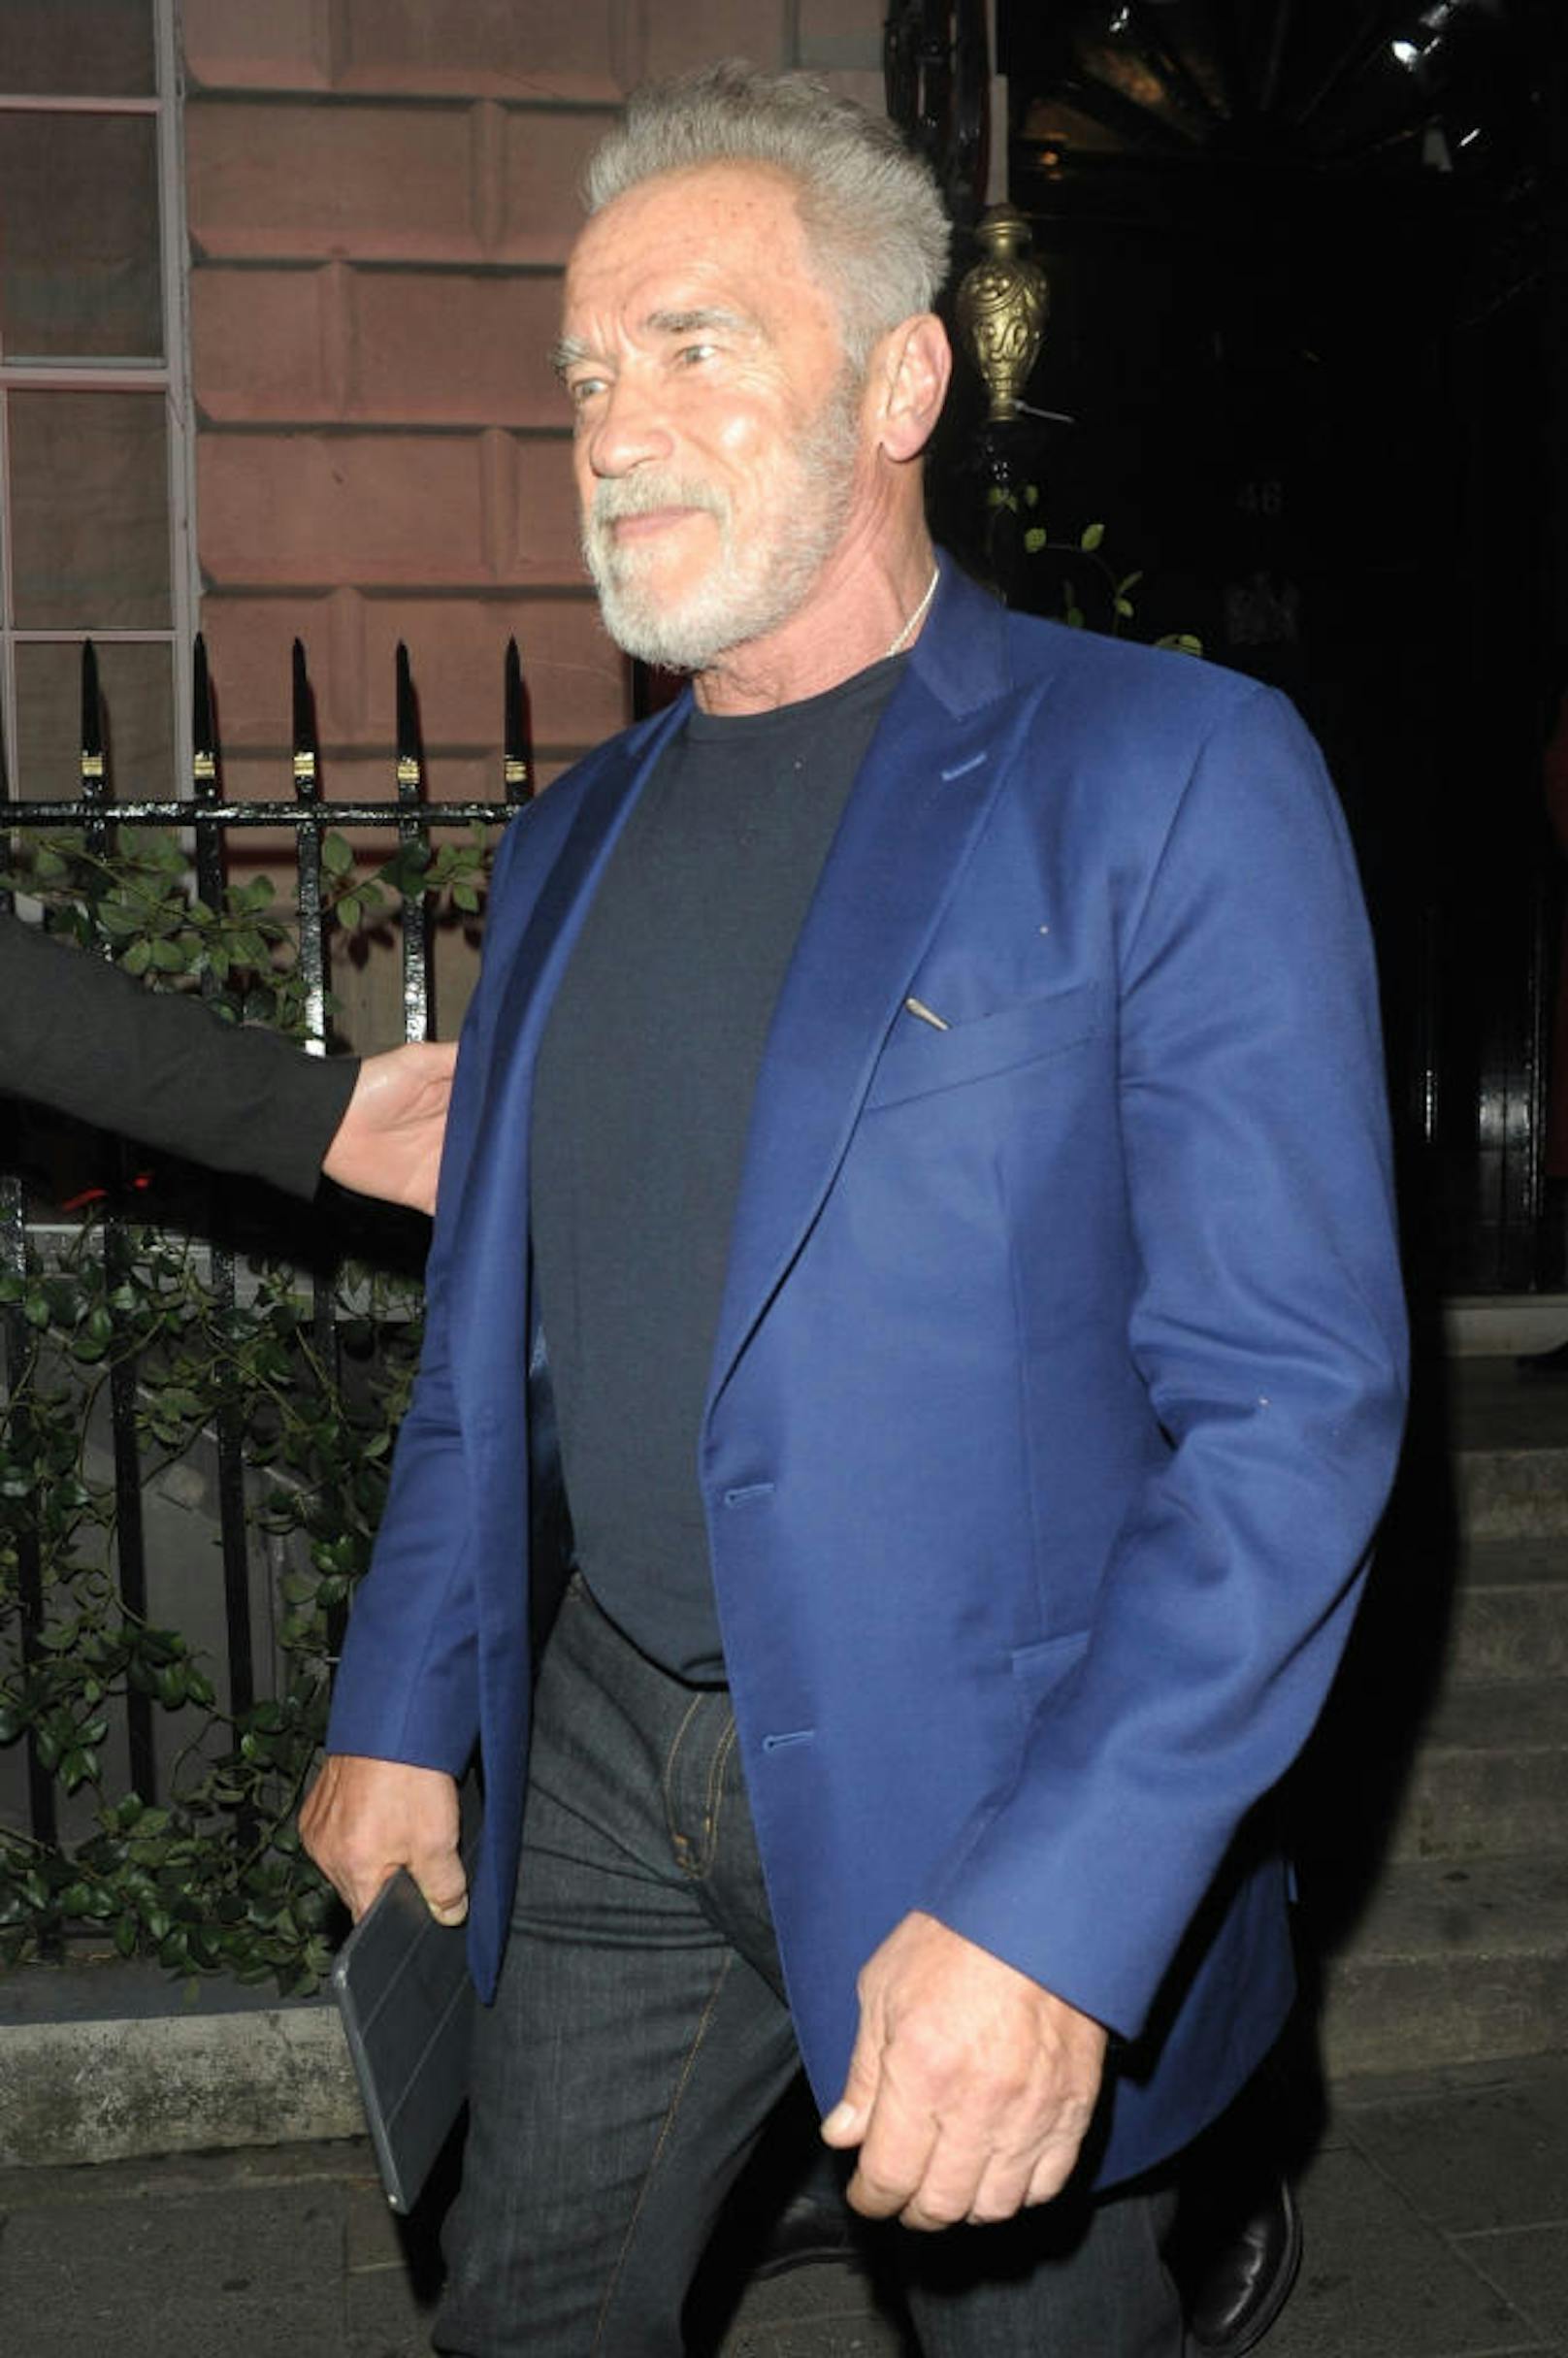 Noch mit grauem Kopf: Arnold Schwarzenegger am 5.11.2018 in London